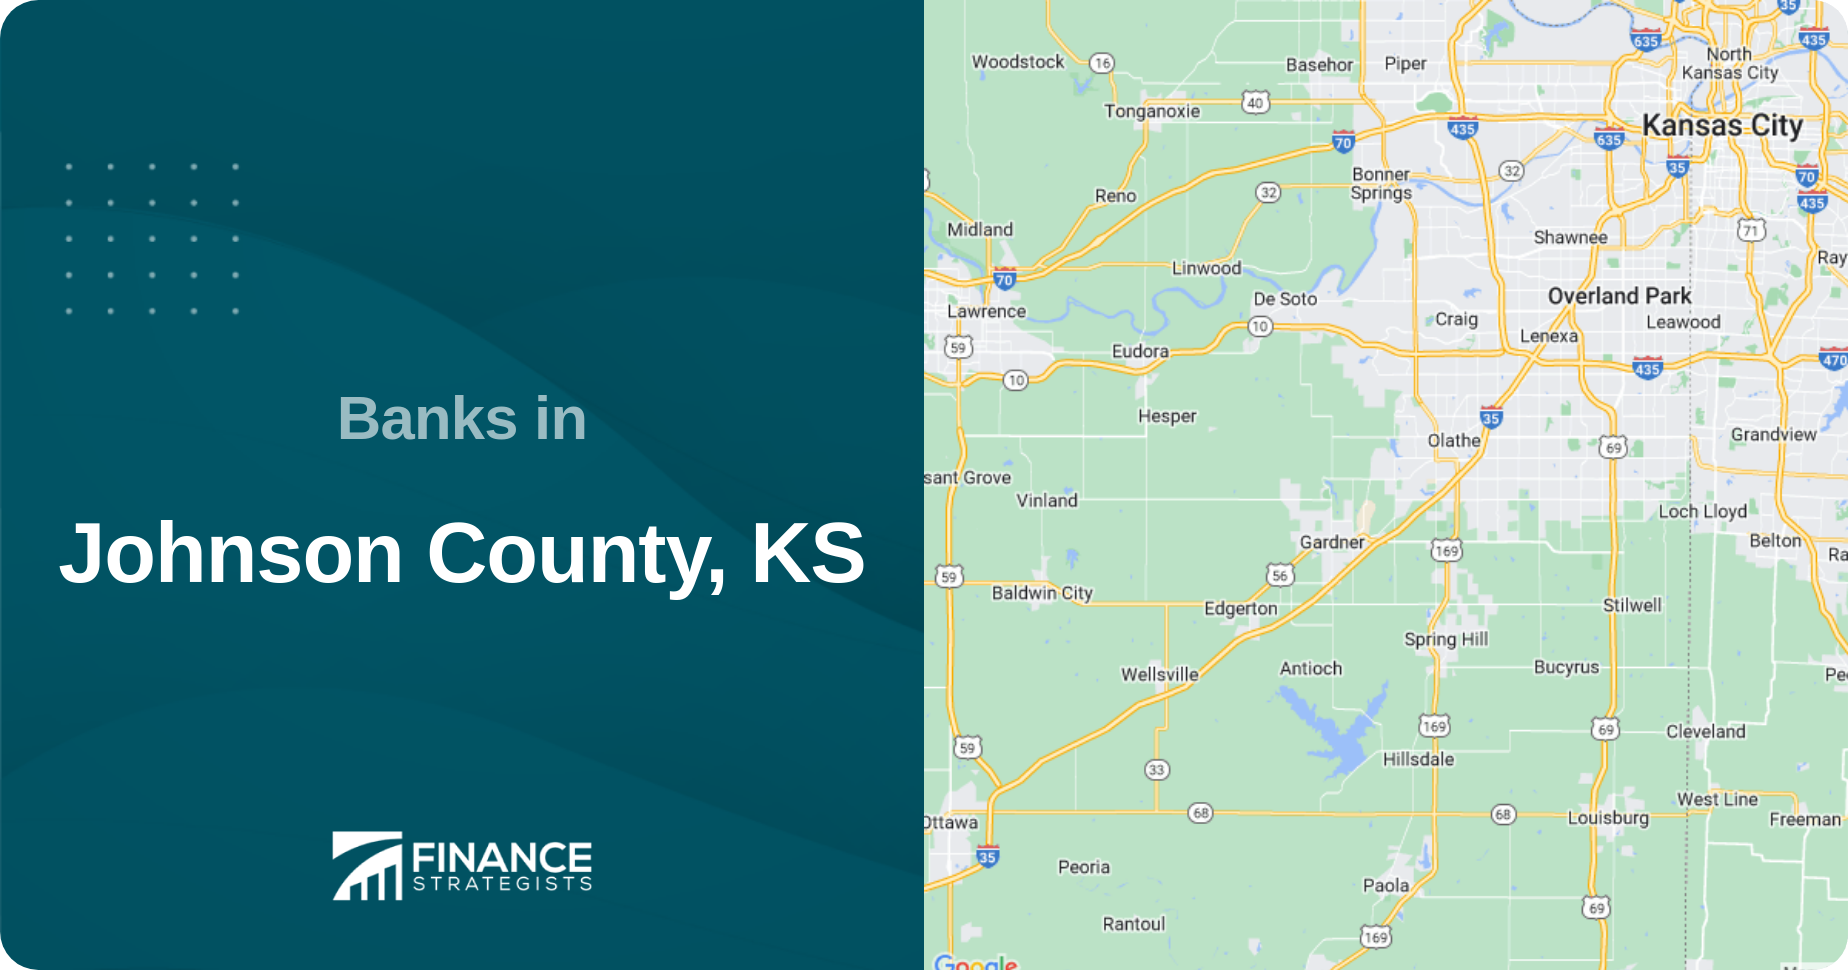 Banks in Johnson County, KS